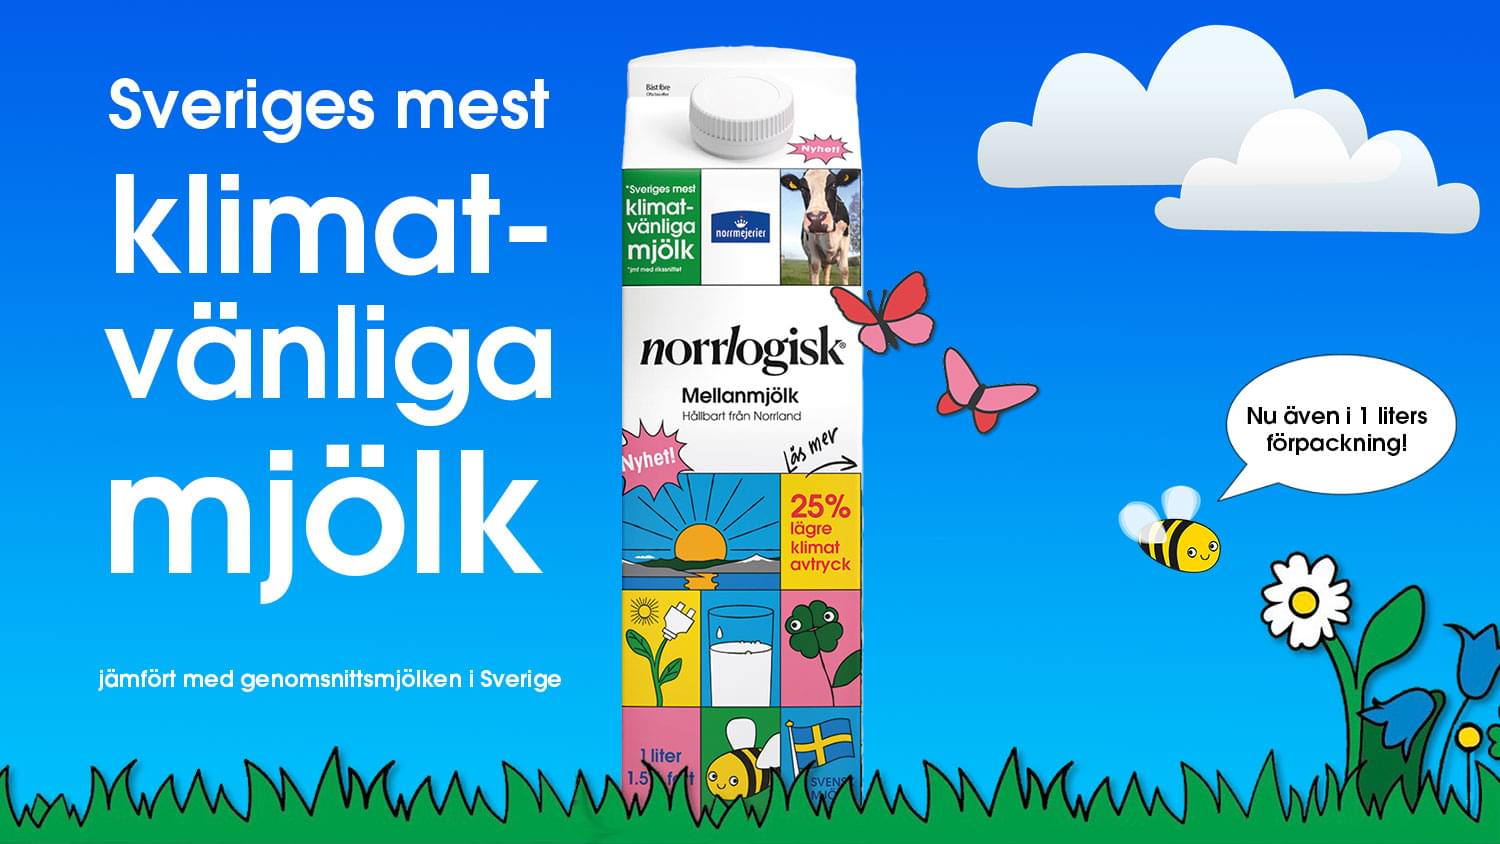 Norrlogisk Mellanmjölk - nu också i 1 liter